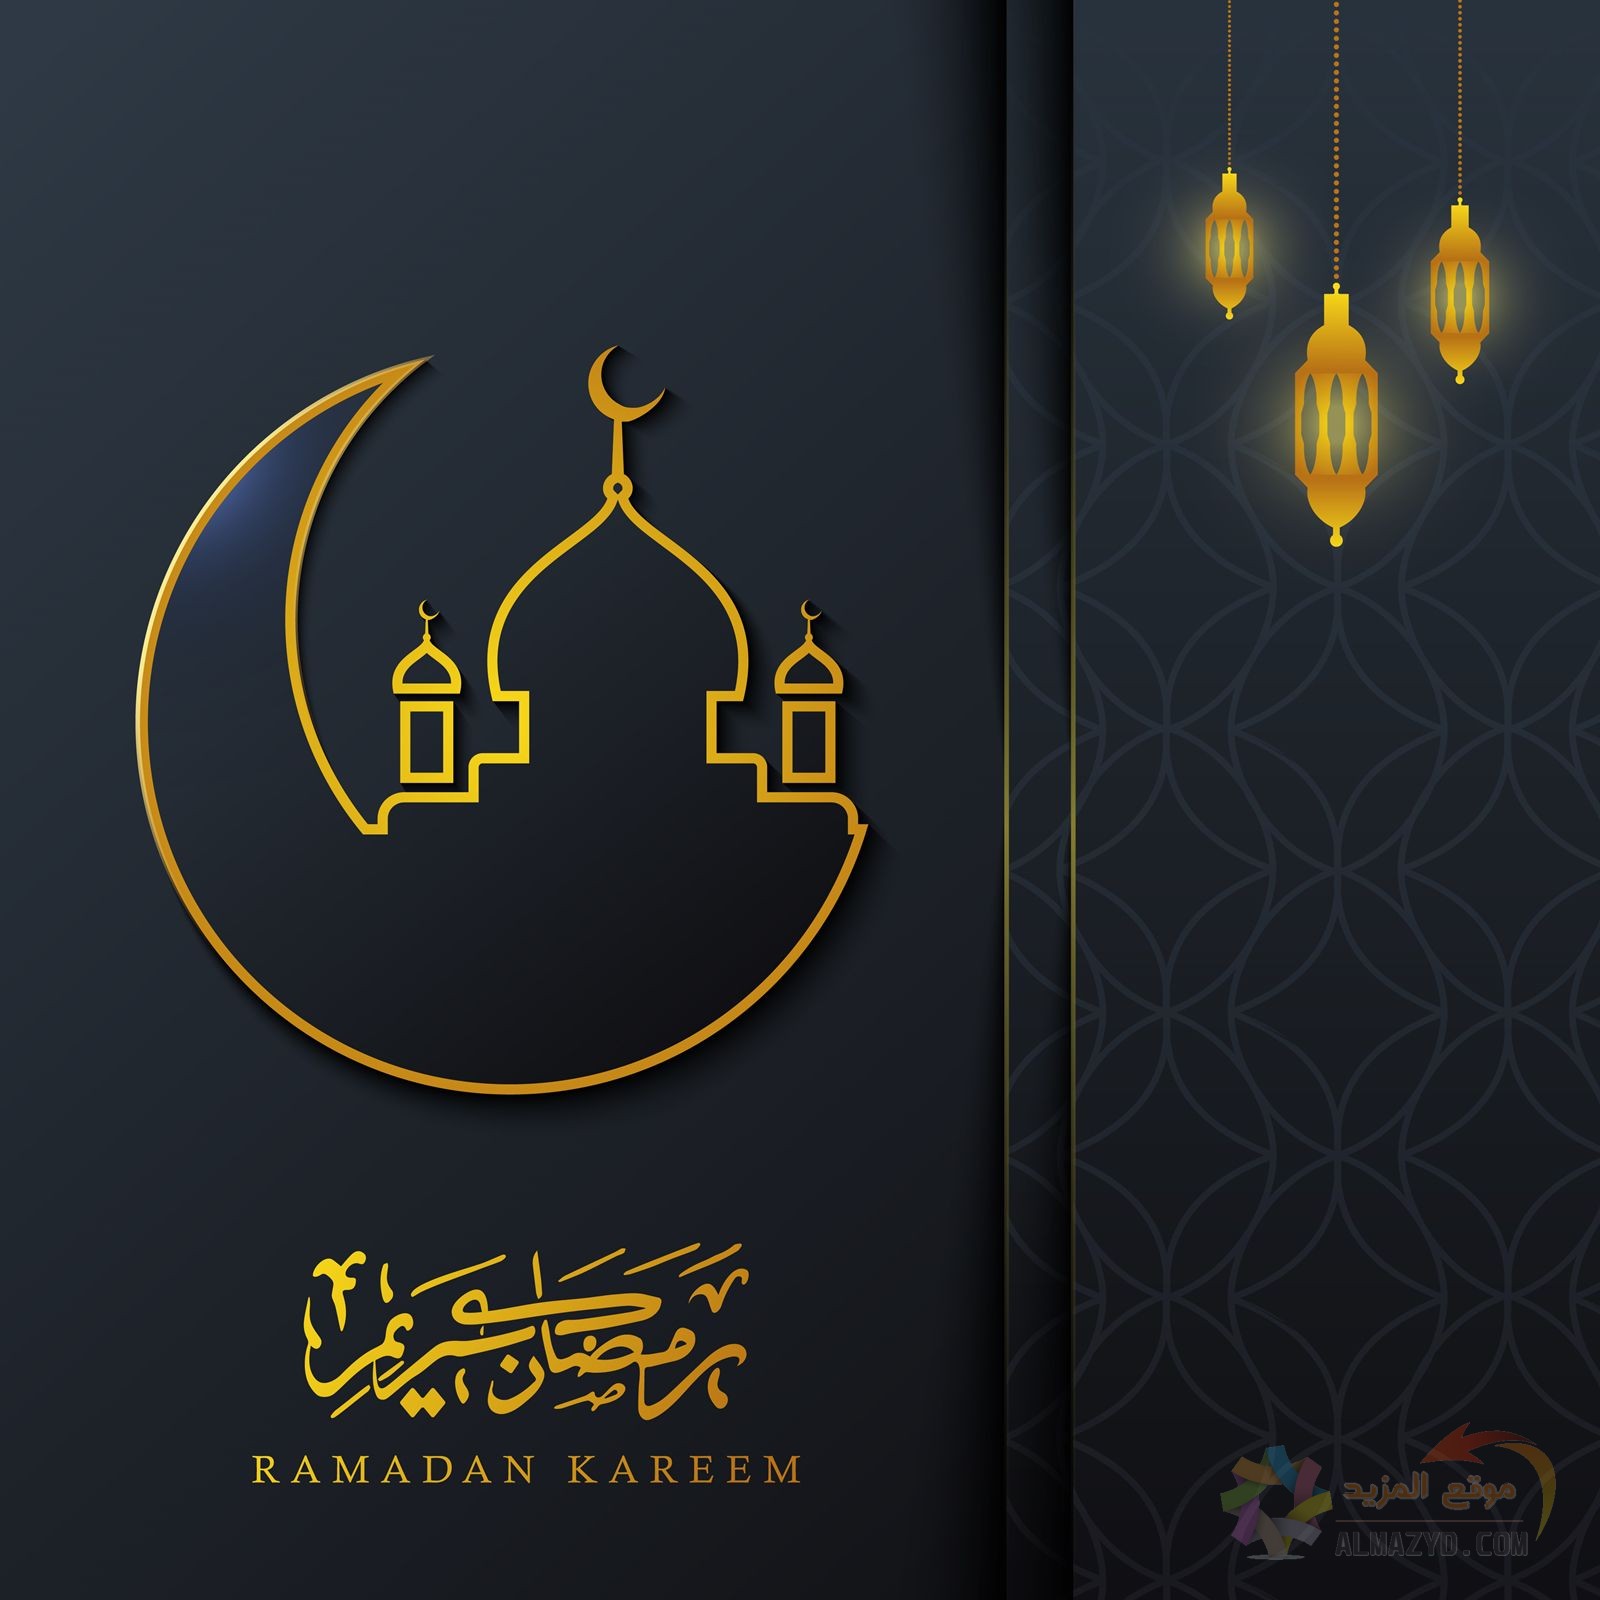 أجمل صور تهنئة بشهر رمضان 2021 مع بطاقات، أدعية وكلمات رائعة • موقع المزيد